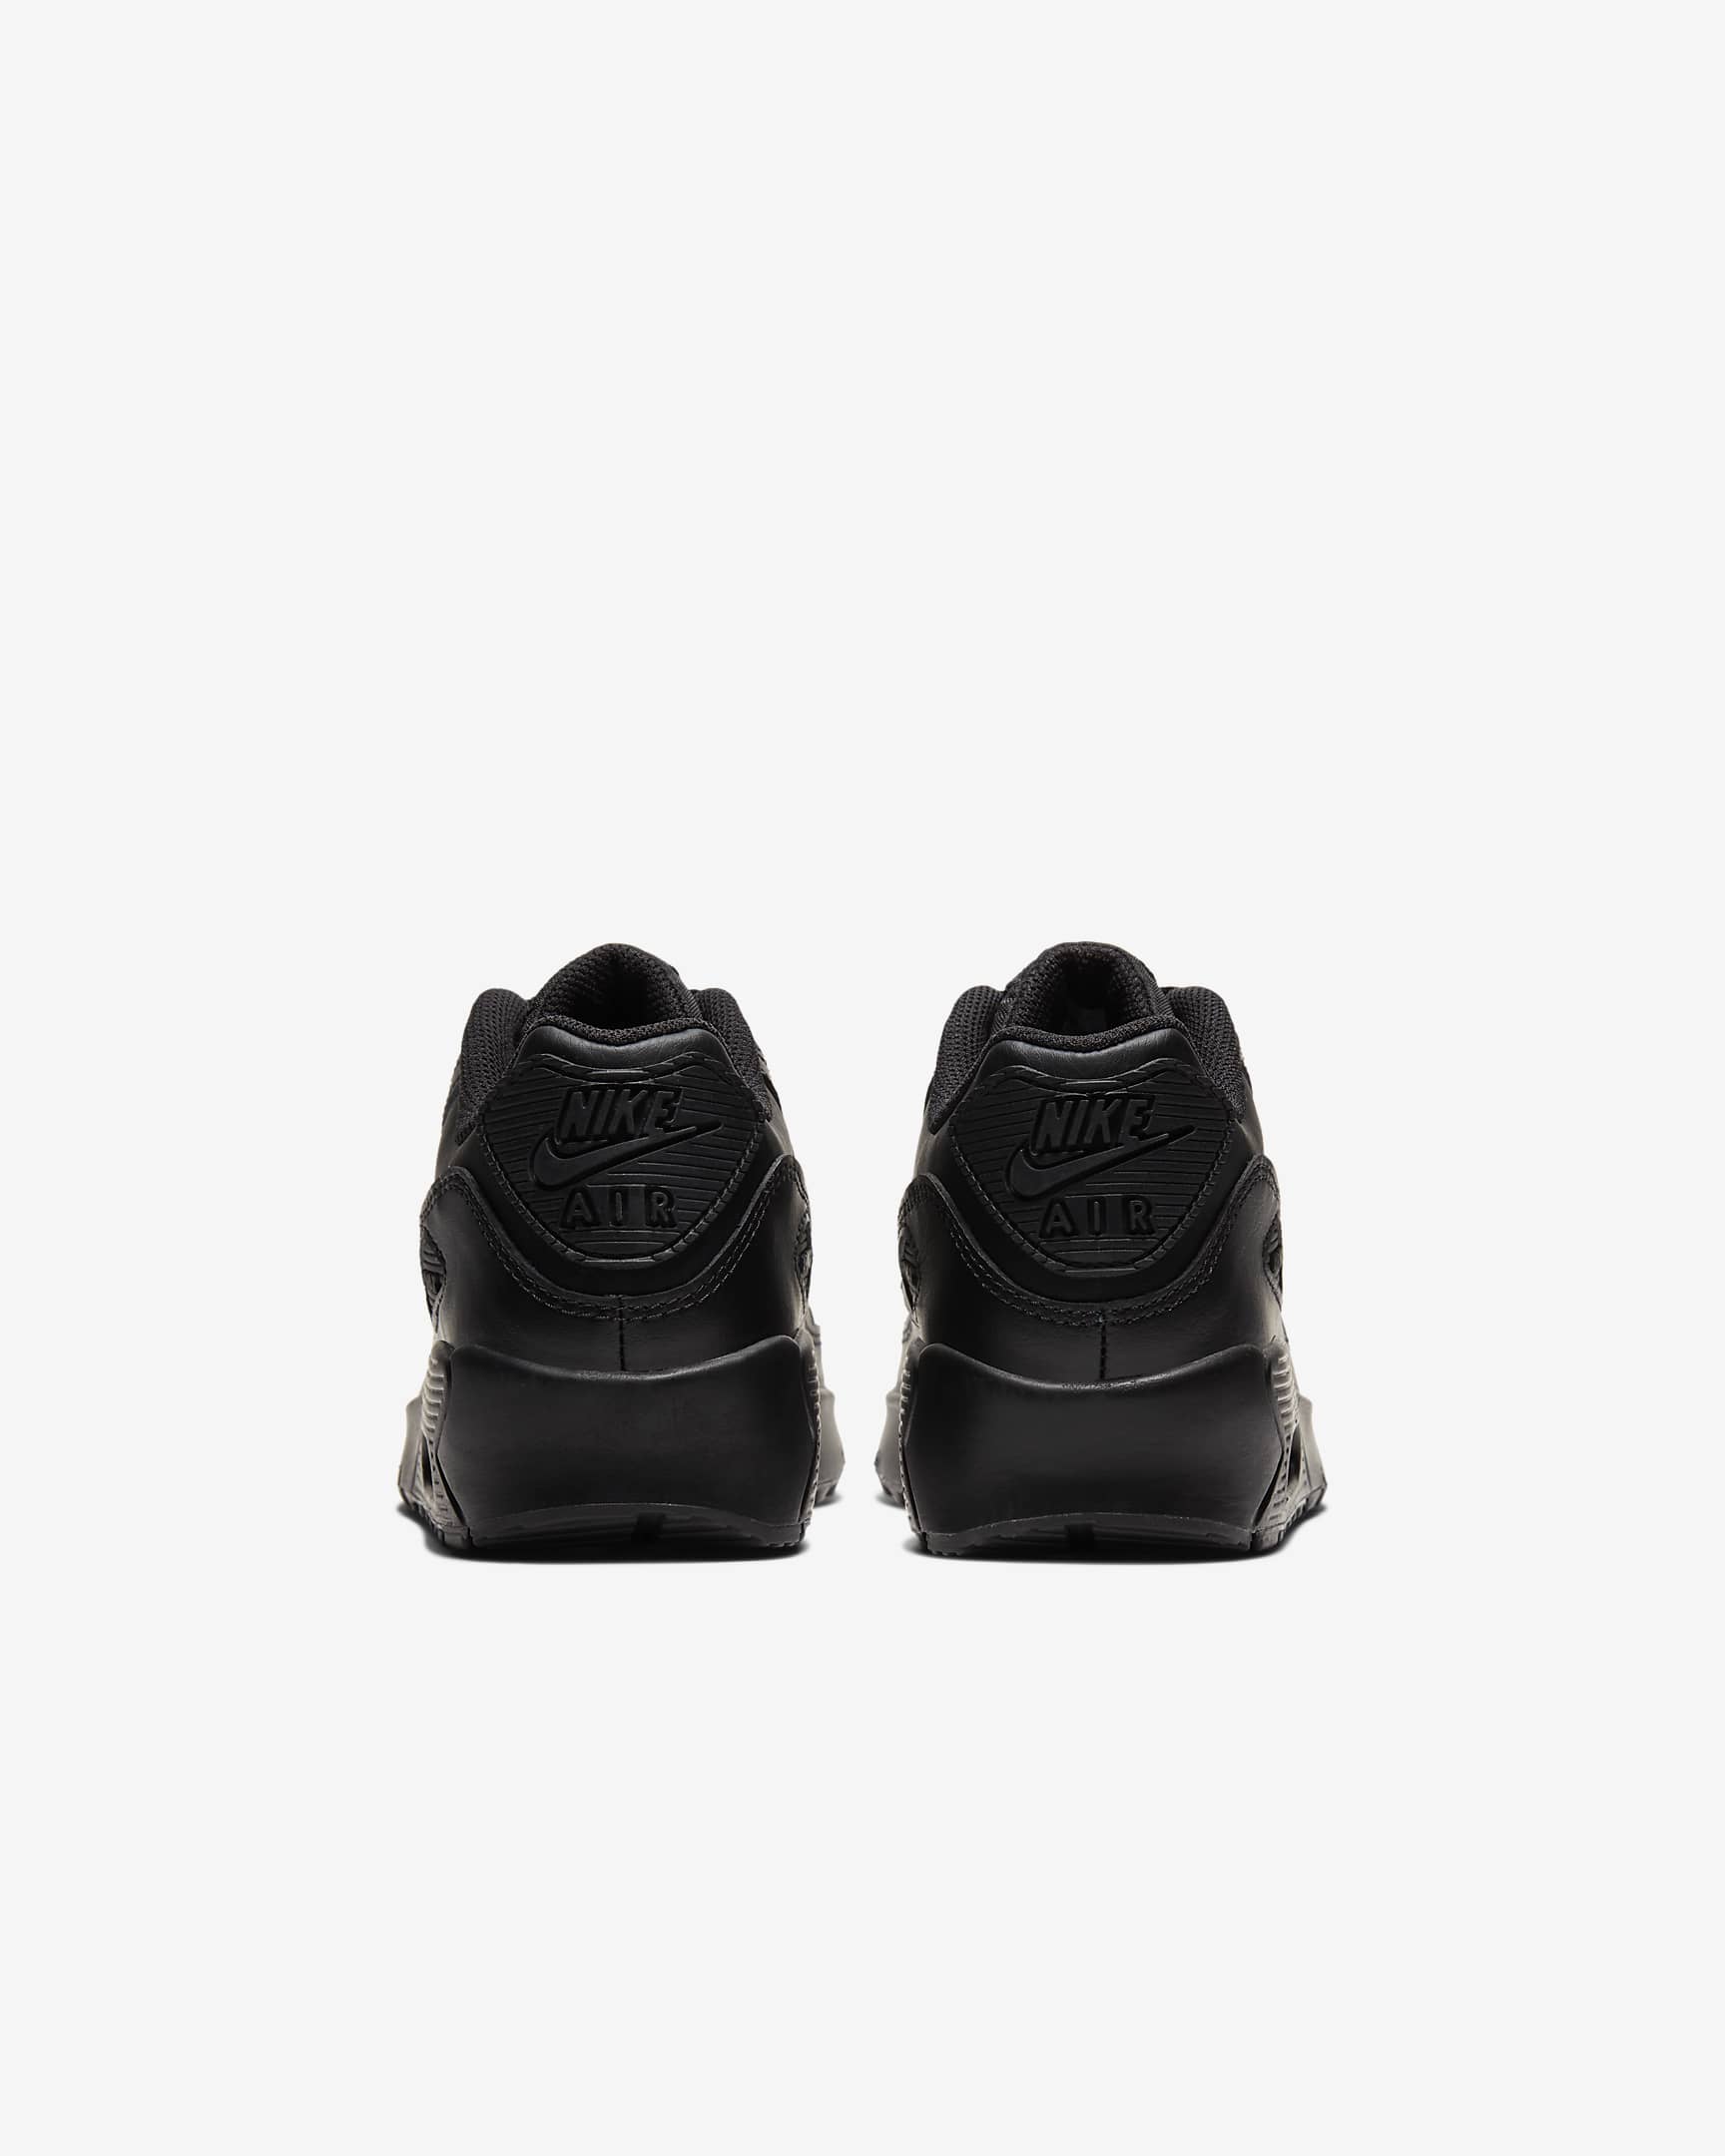 Nike Air Max 90 LTR Schuh für ältere Kinder - Schwarz/Schwarz/Weiß/Schwarz